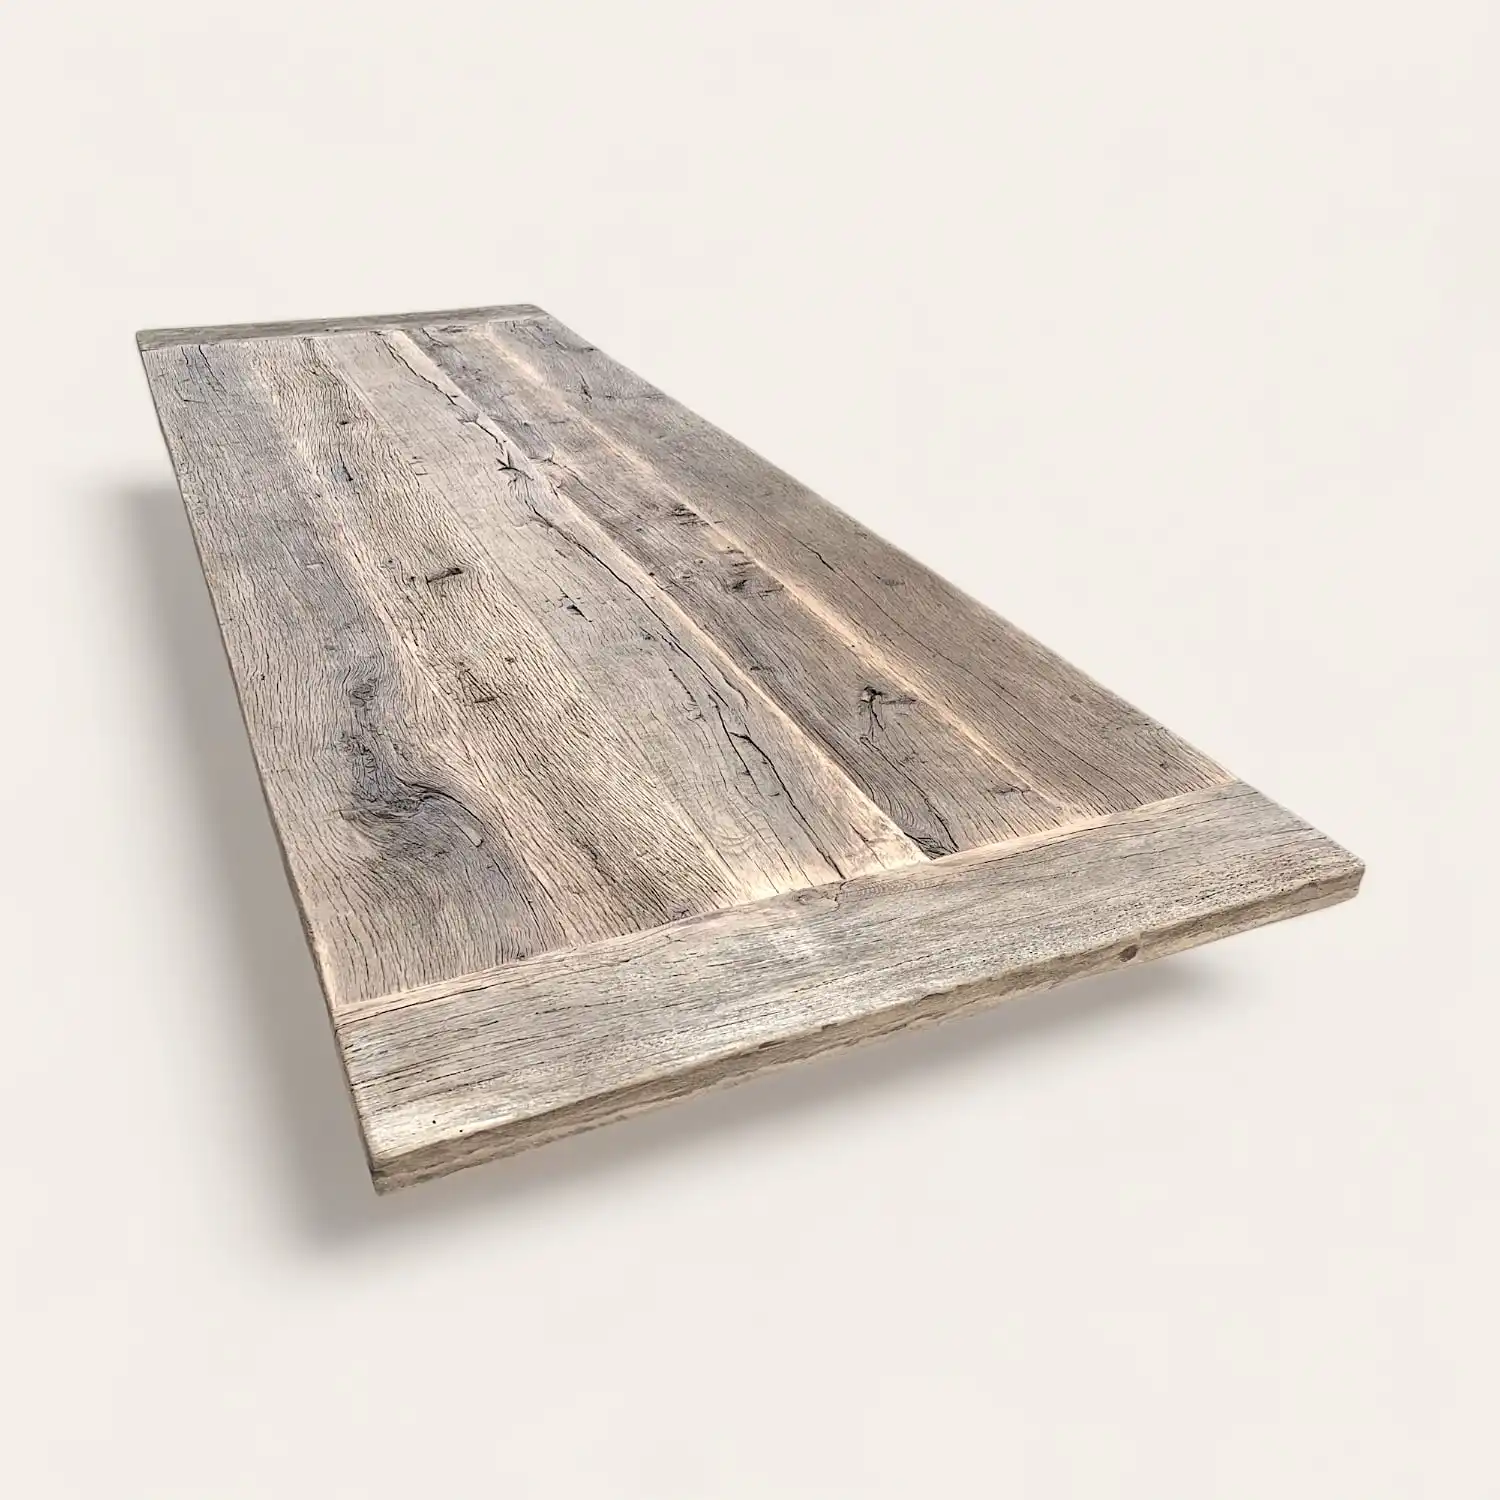  Plateau de table rustique en bois ancien vue de dessus, mettant en évidence les veinures profondes et la patine unique du bois, idéal pour un ameublement rustique et éco-responsable. 